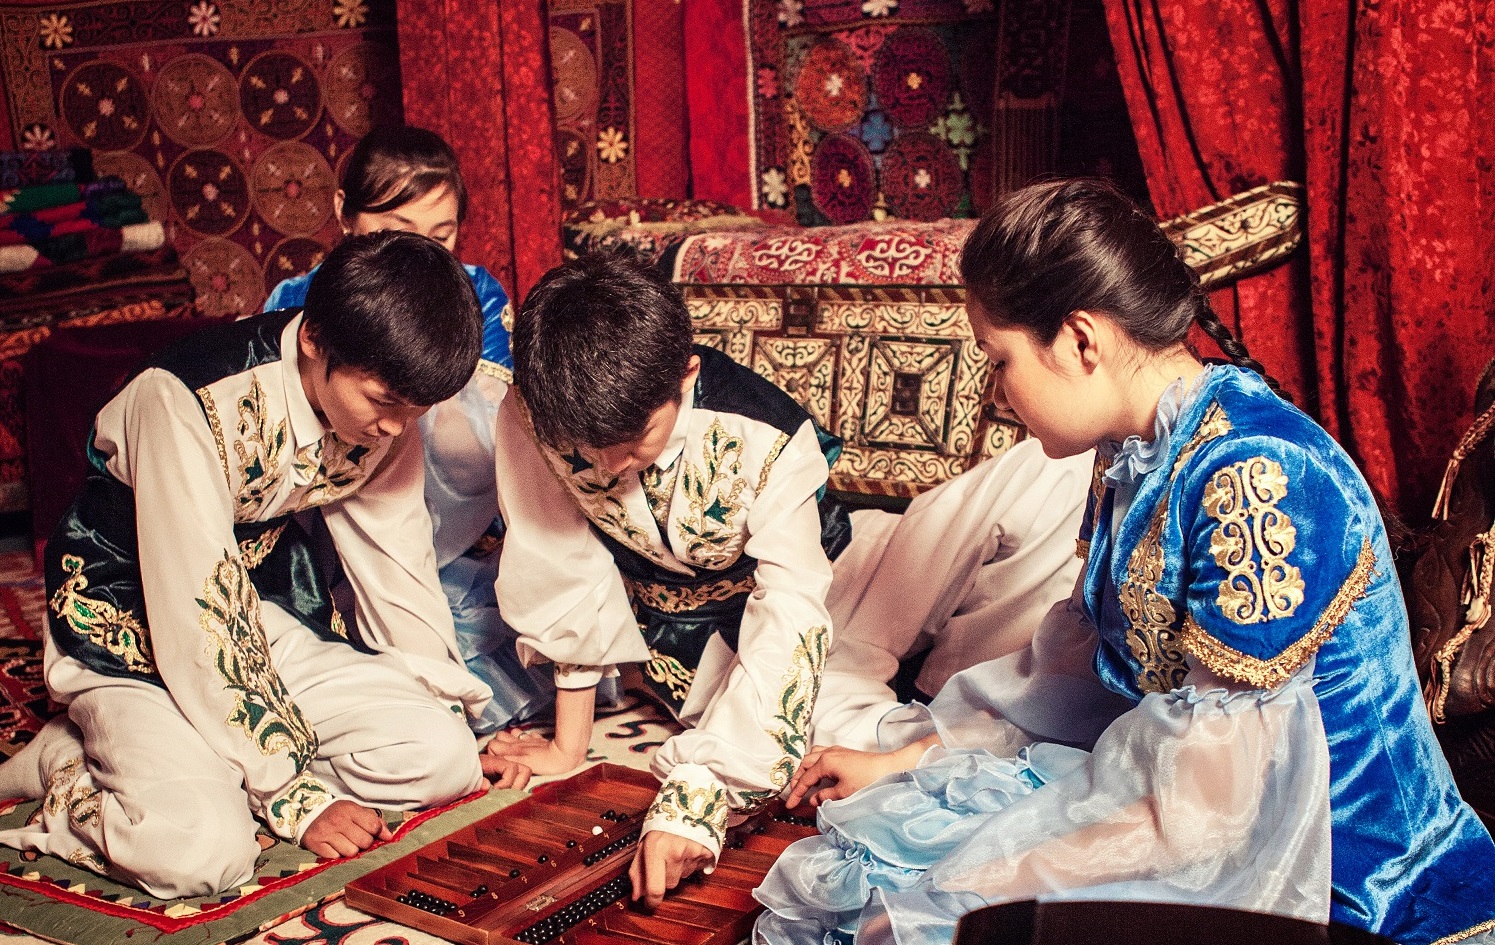 ЮНЕСКО признало игру тогыз кумалак культурным наследием человечества